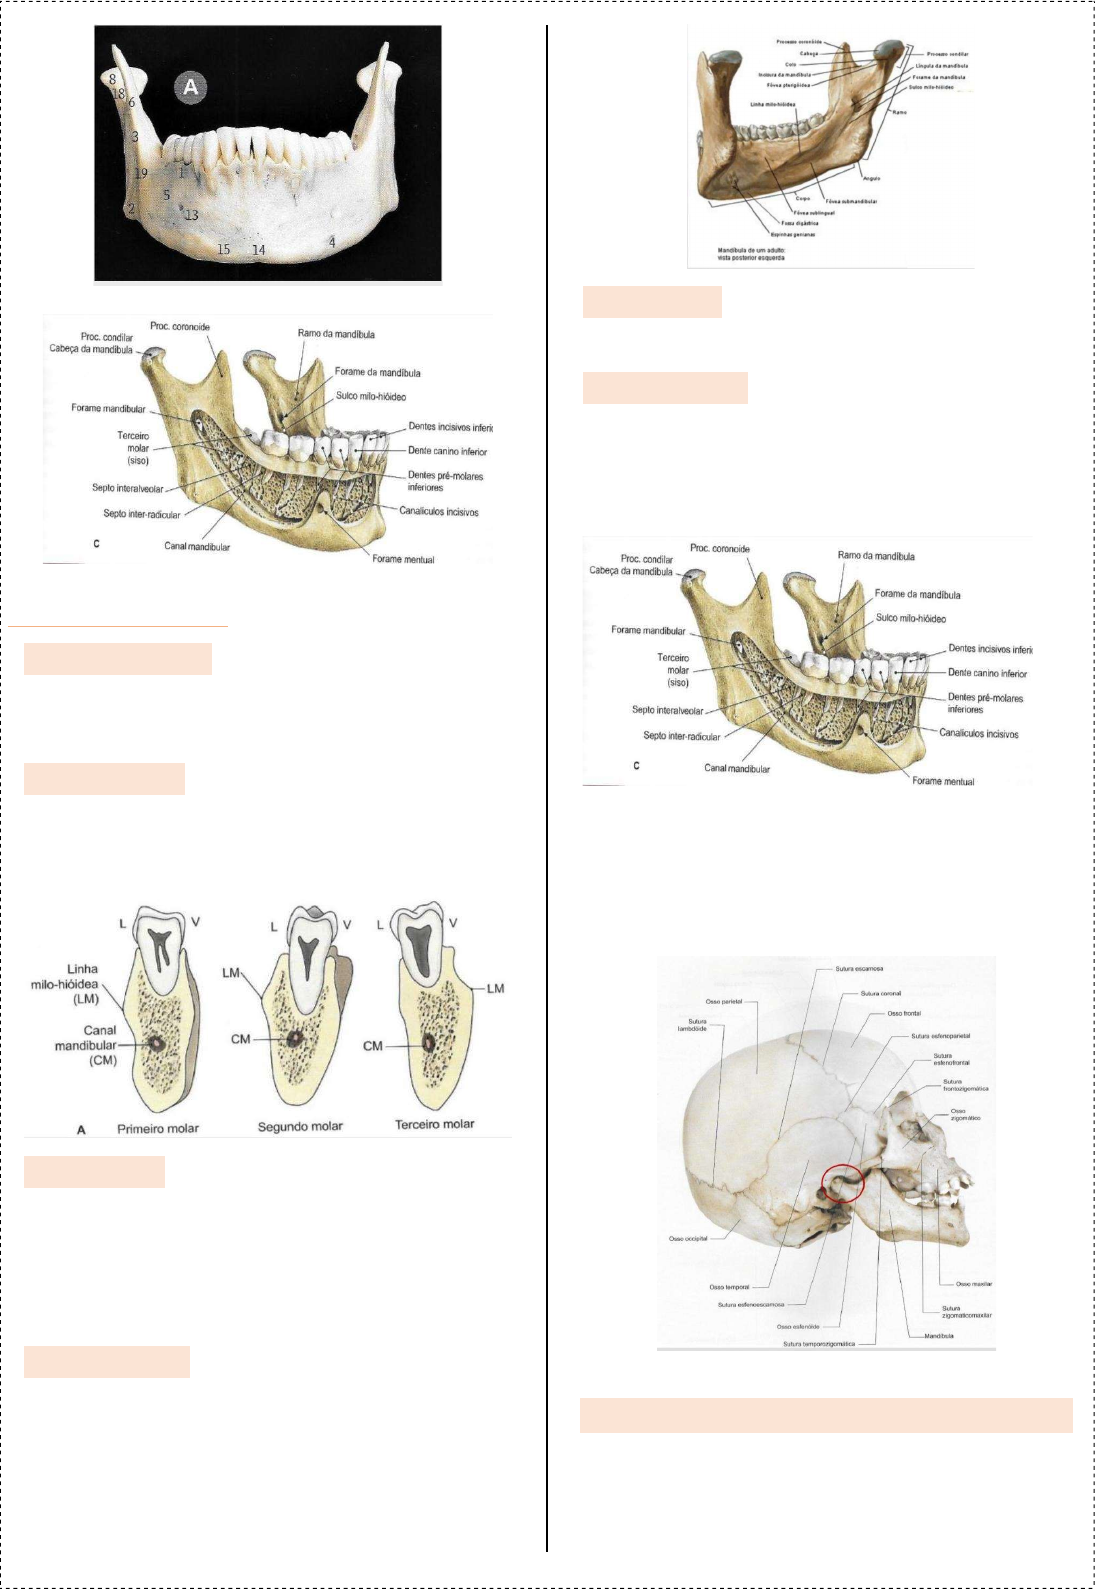 Dra. Dentinhos - 💀 Anatomia da Mandíbula ☠️ ⠀ O que achariam de uma  apostila de anatomia só com desenhos meus? ♥️ ⠀ #anatomia #anato #mandibula  #mandibular #fisiologia #odontologia #medicina #odontoporamor  #studygramodontologia #anatomy #jaw